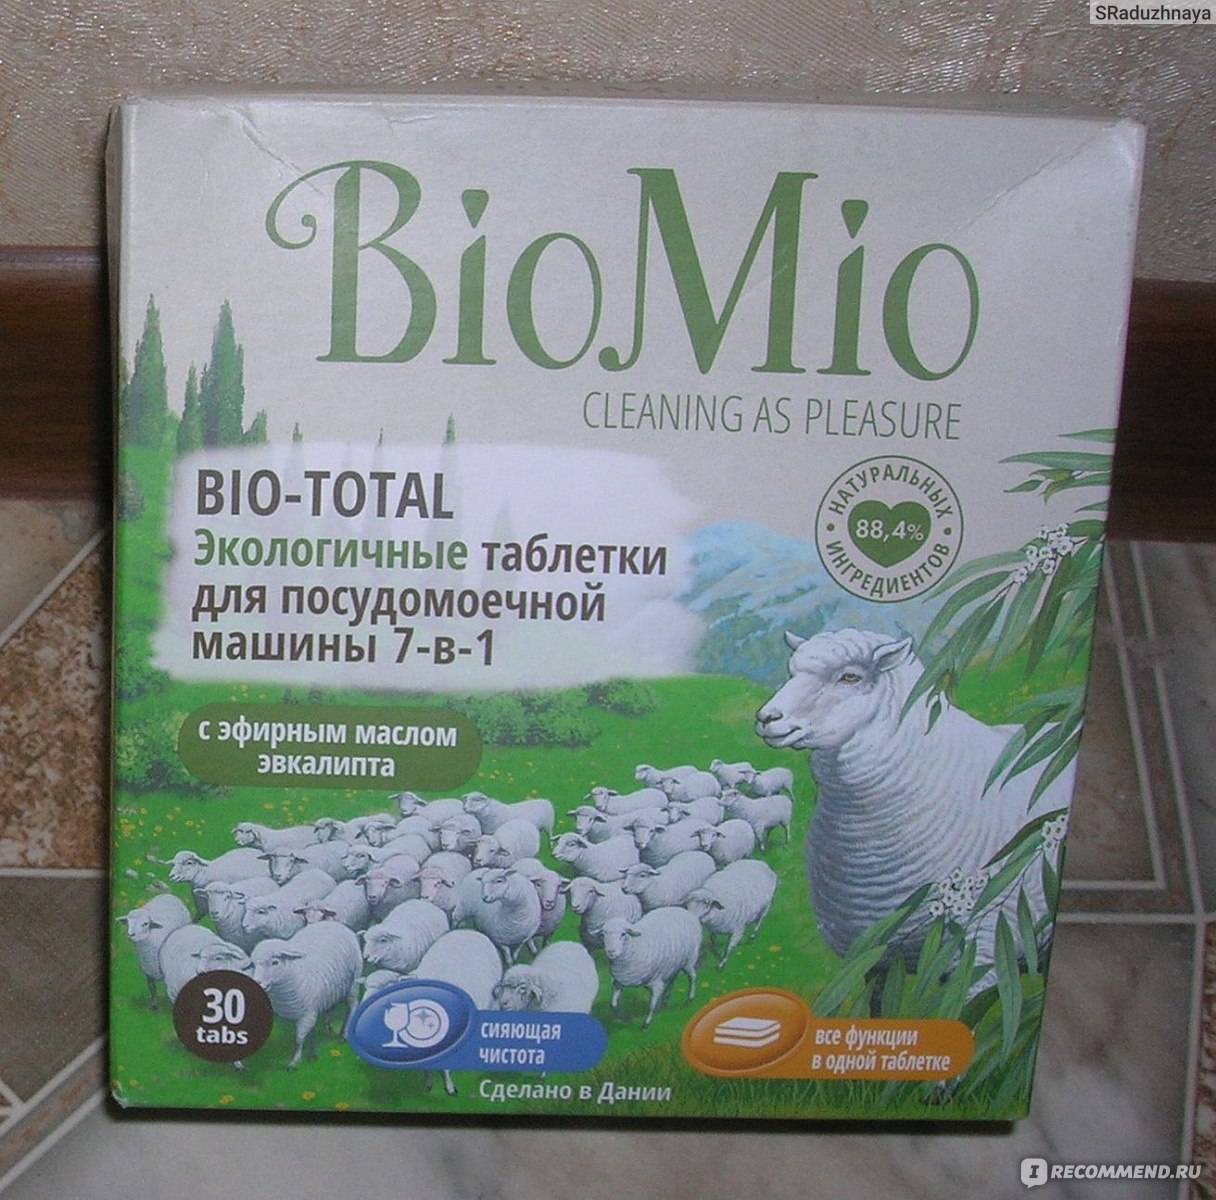 Таблетки для посудомоечных машин biomio: экологичные с маслом эвкалипта - состав